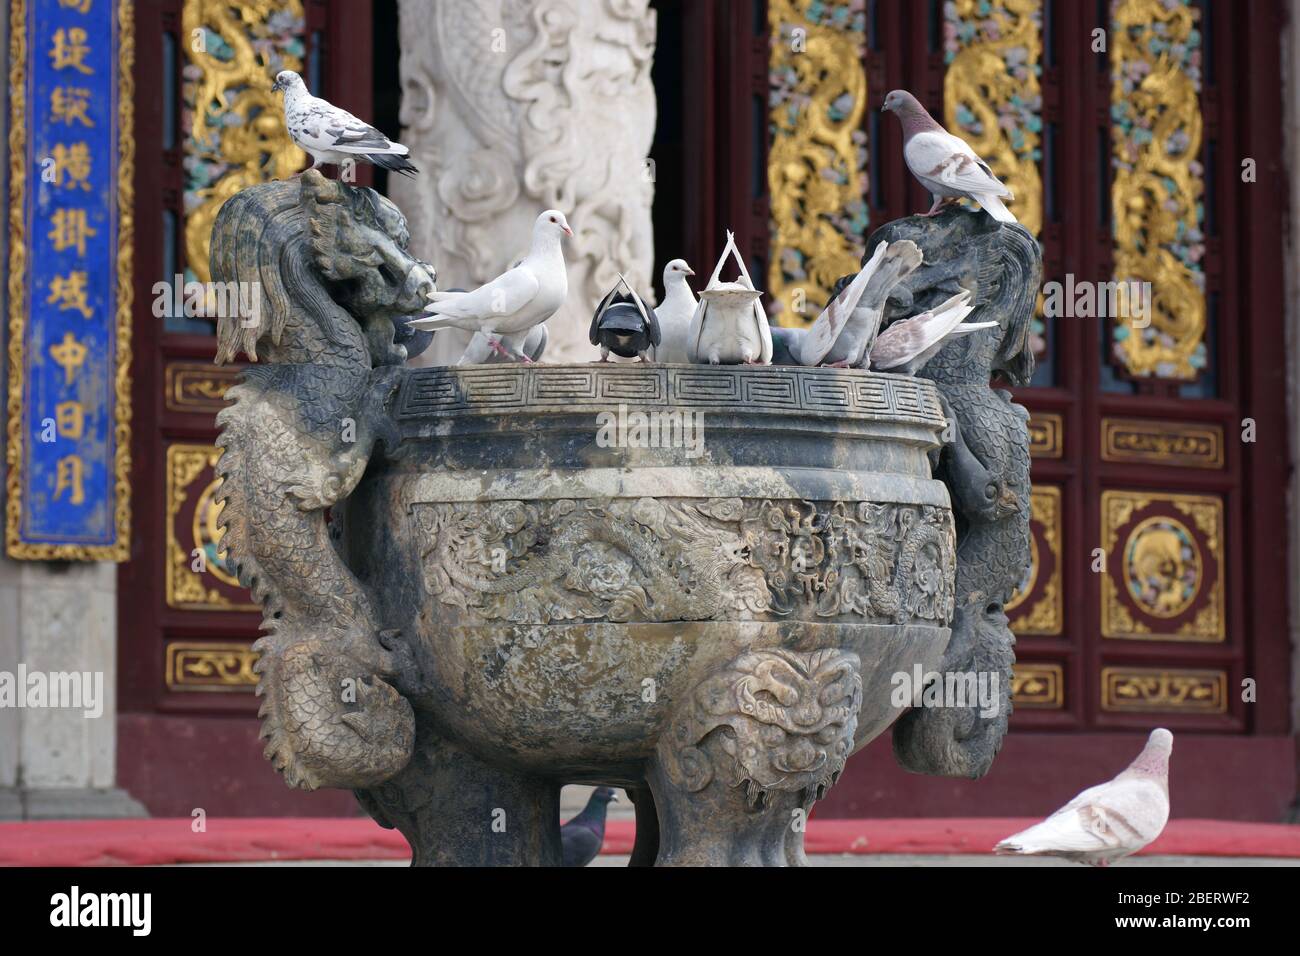 Bol en pierre sculpté avec de l'eau sur le territoire du parc de Bouddha de Jade, Anshan, province de Liaoning, Chine, Asie. Les pigeons se rassemblent dans le bol. Banque D'Images